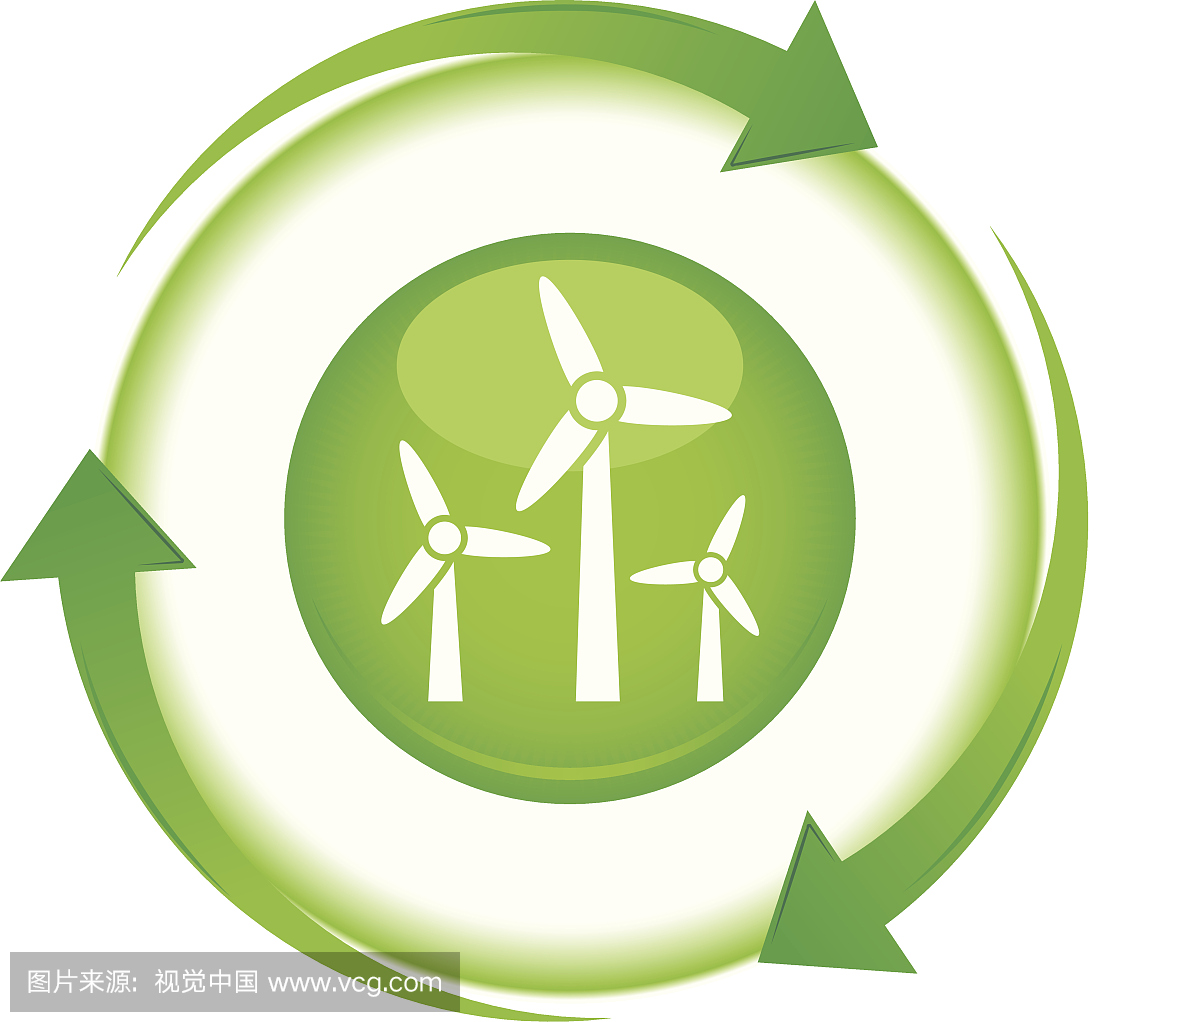 三个绿色箭头循环与风力涡轮机图标